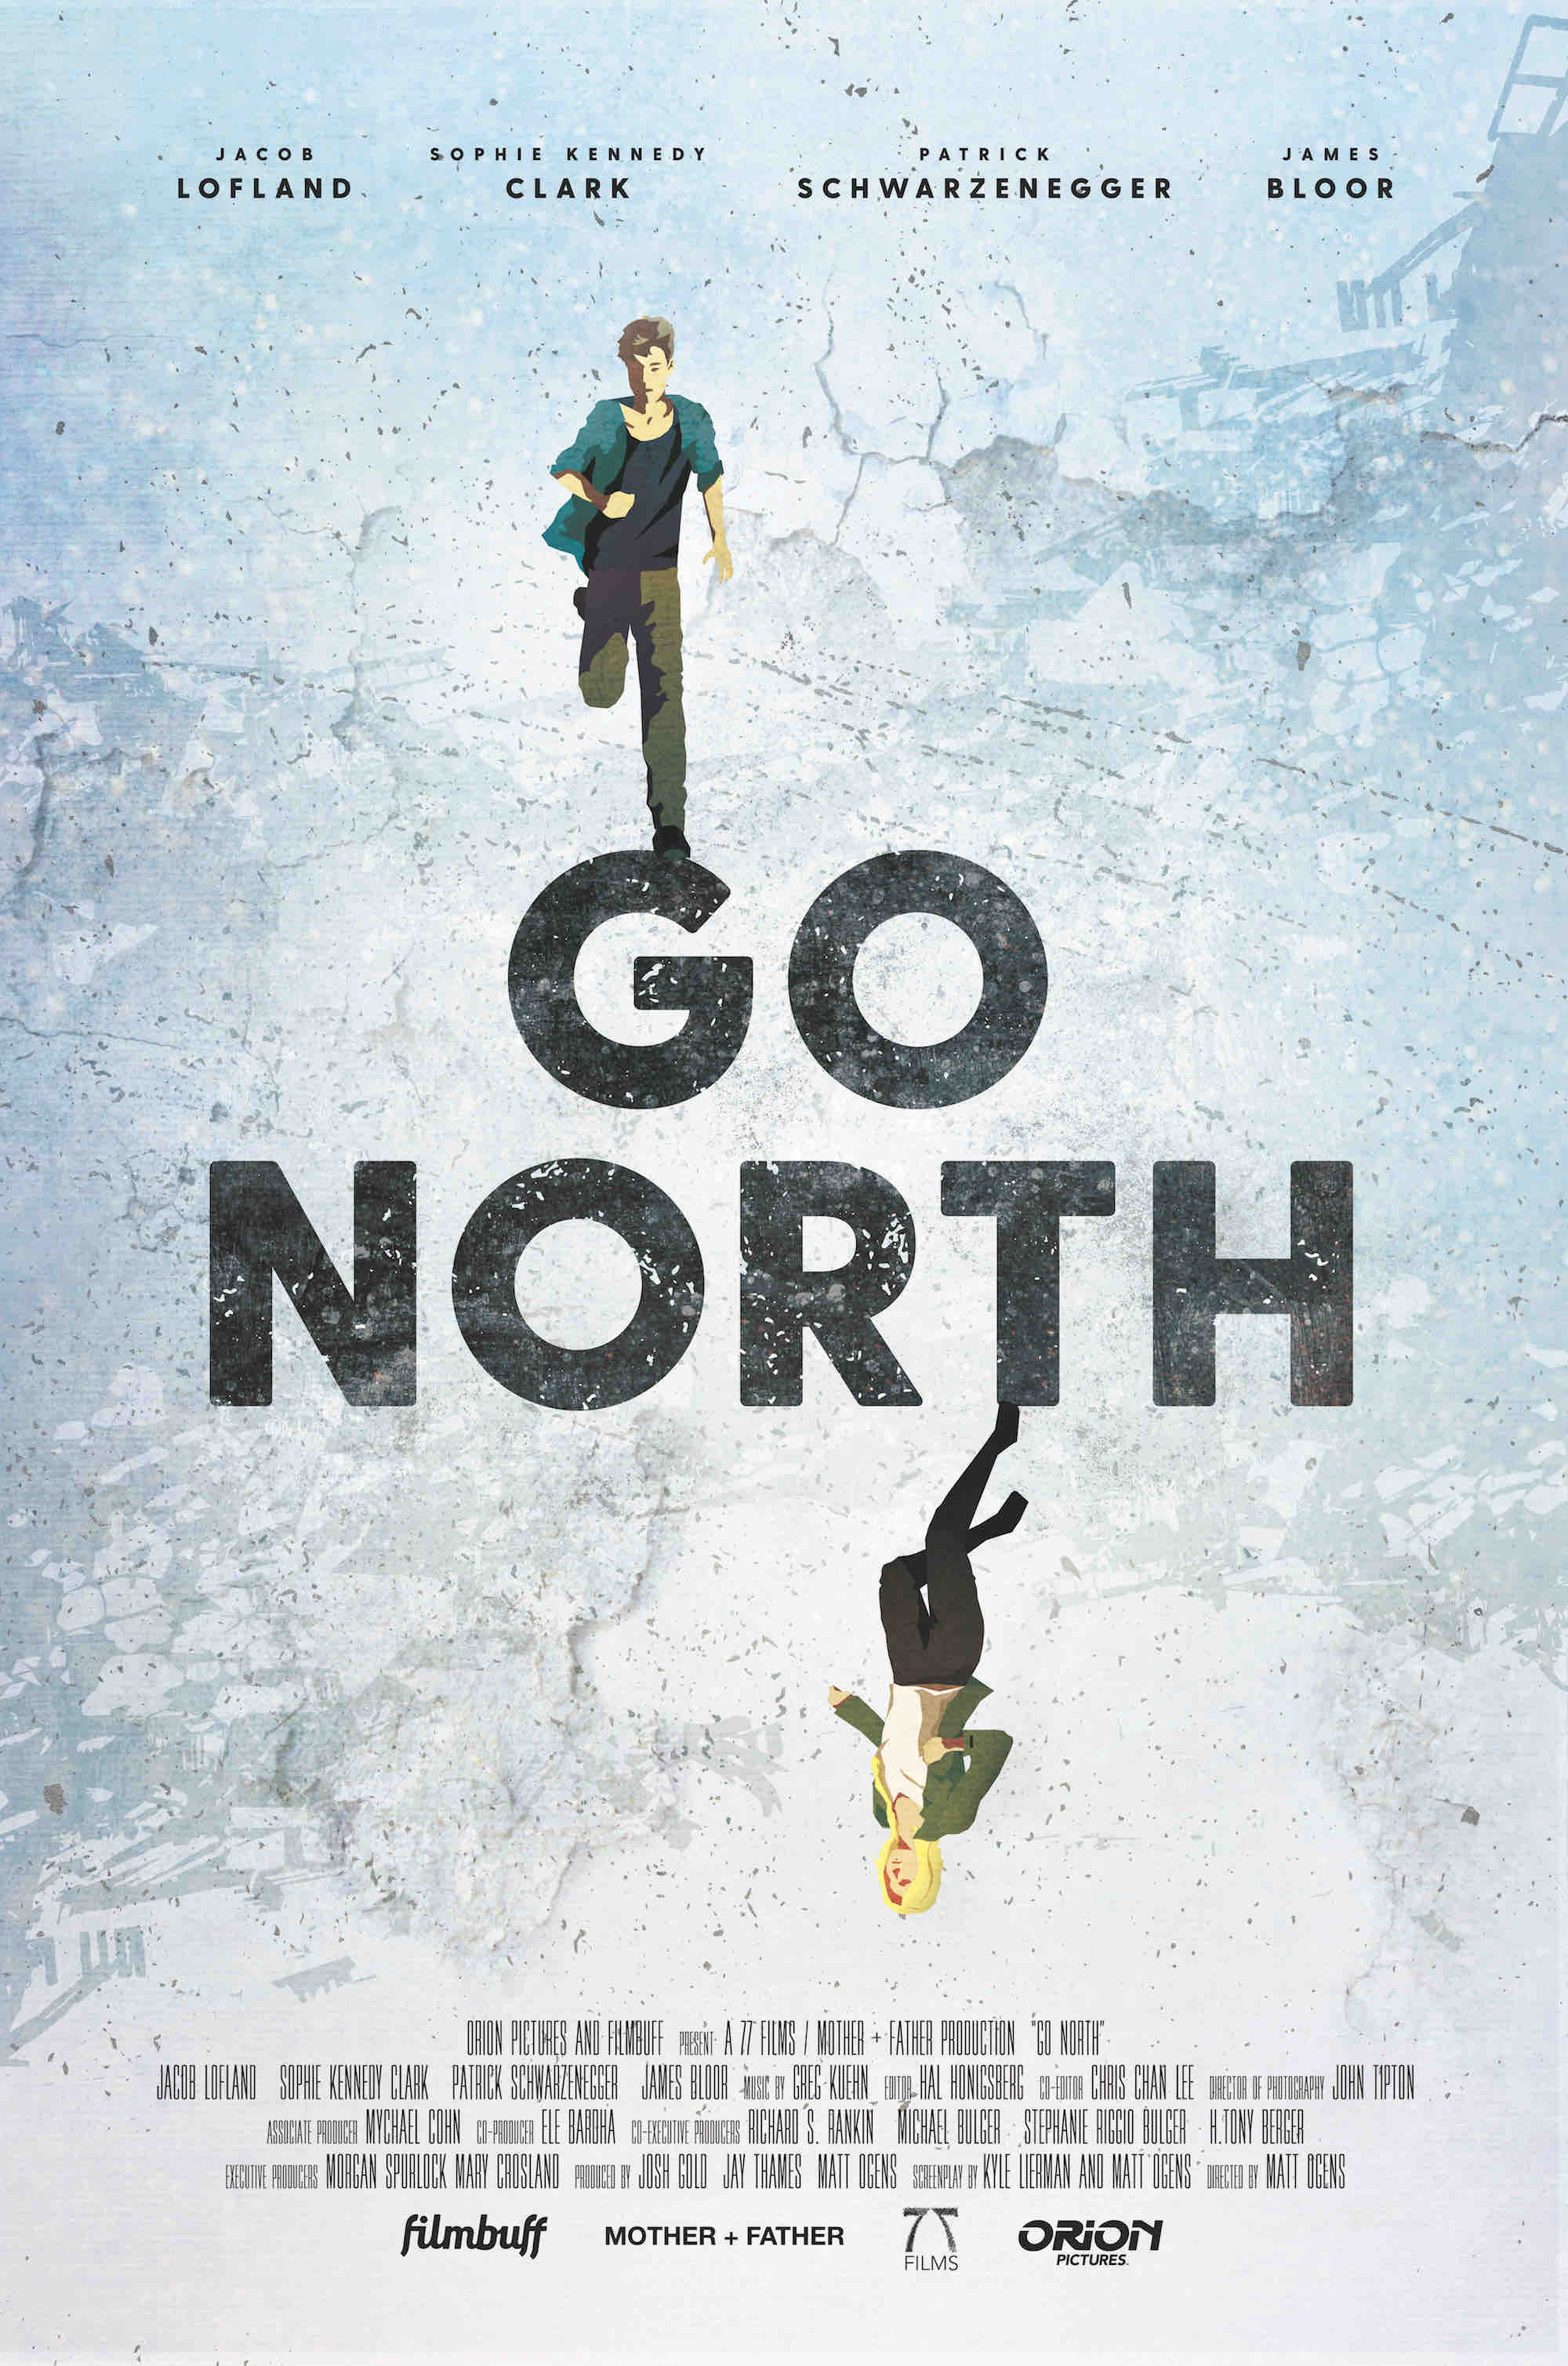 Nonton film Go North layarkaca21 indoxx1 ganool online streaming terbaru